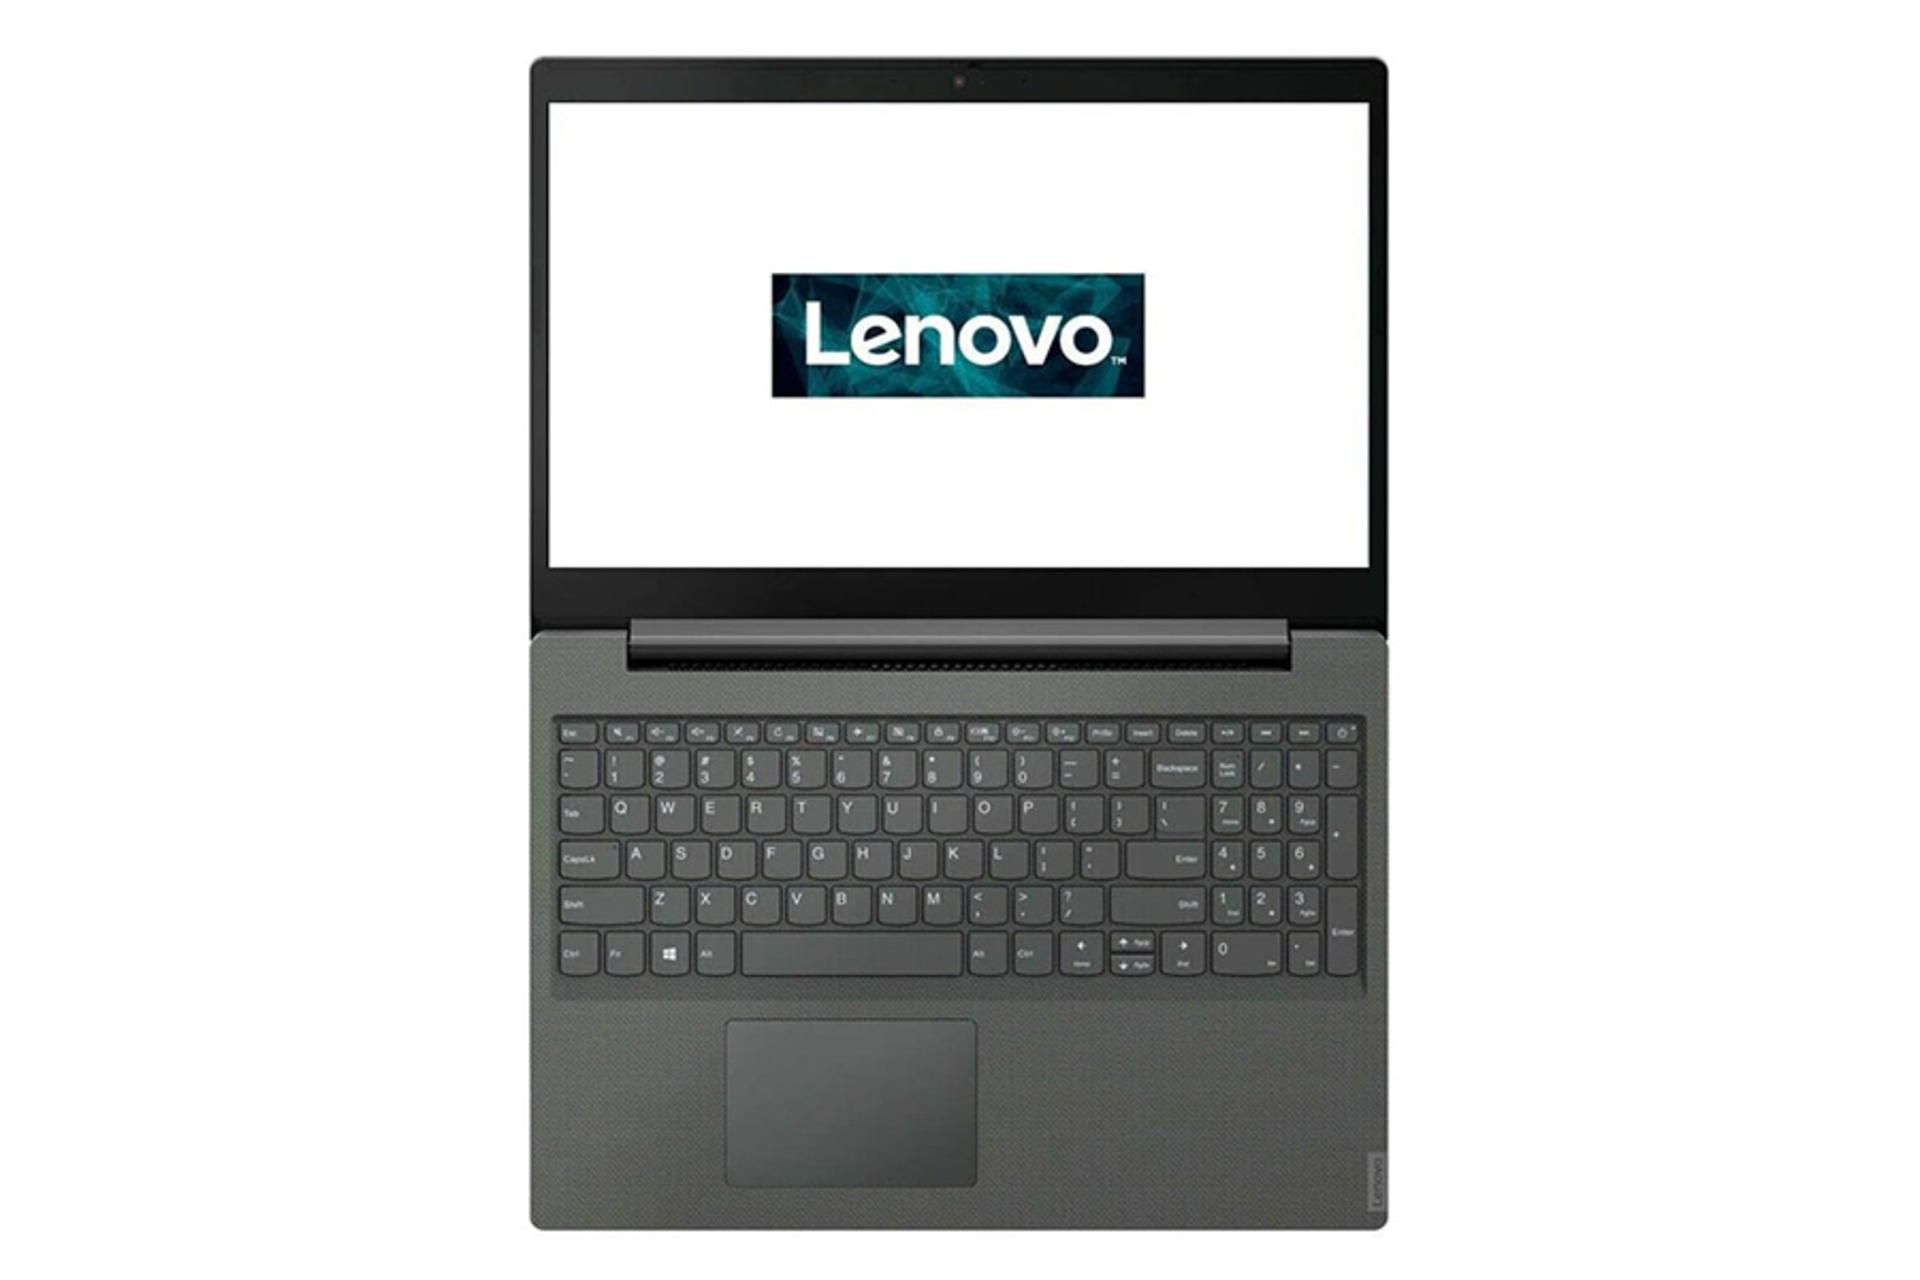 لپ تاپ لنوو v155 از نمای بالا در حالت باز